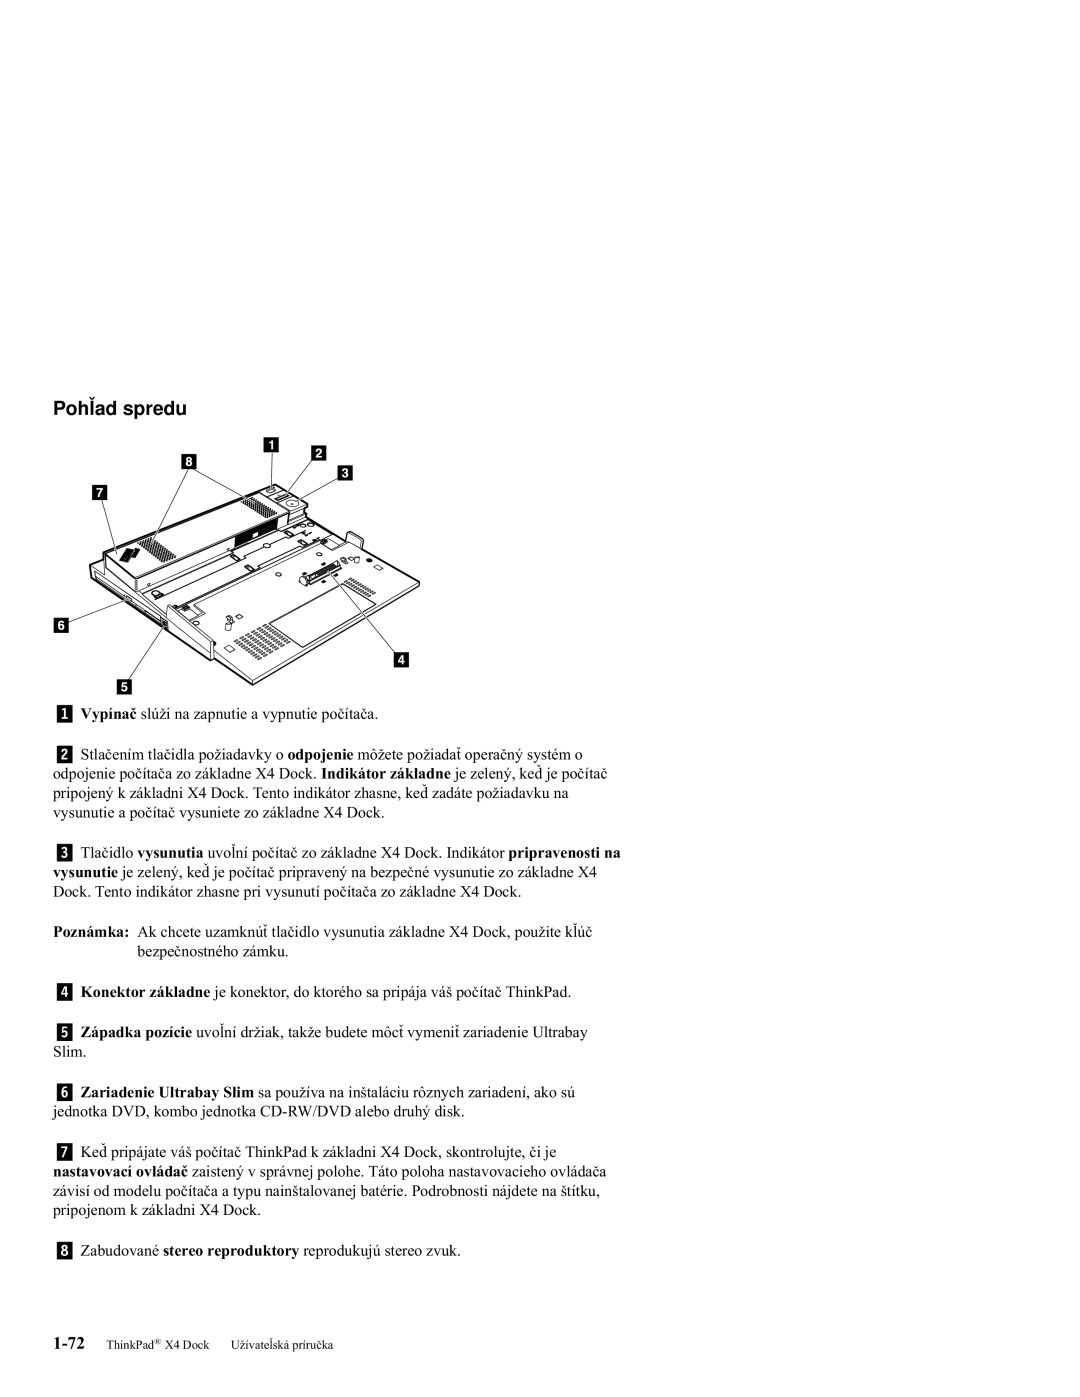 IBM X4 manual Pohľad spredu 